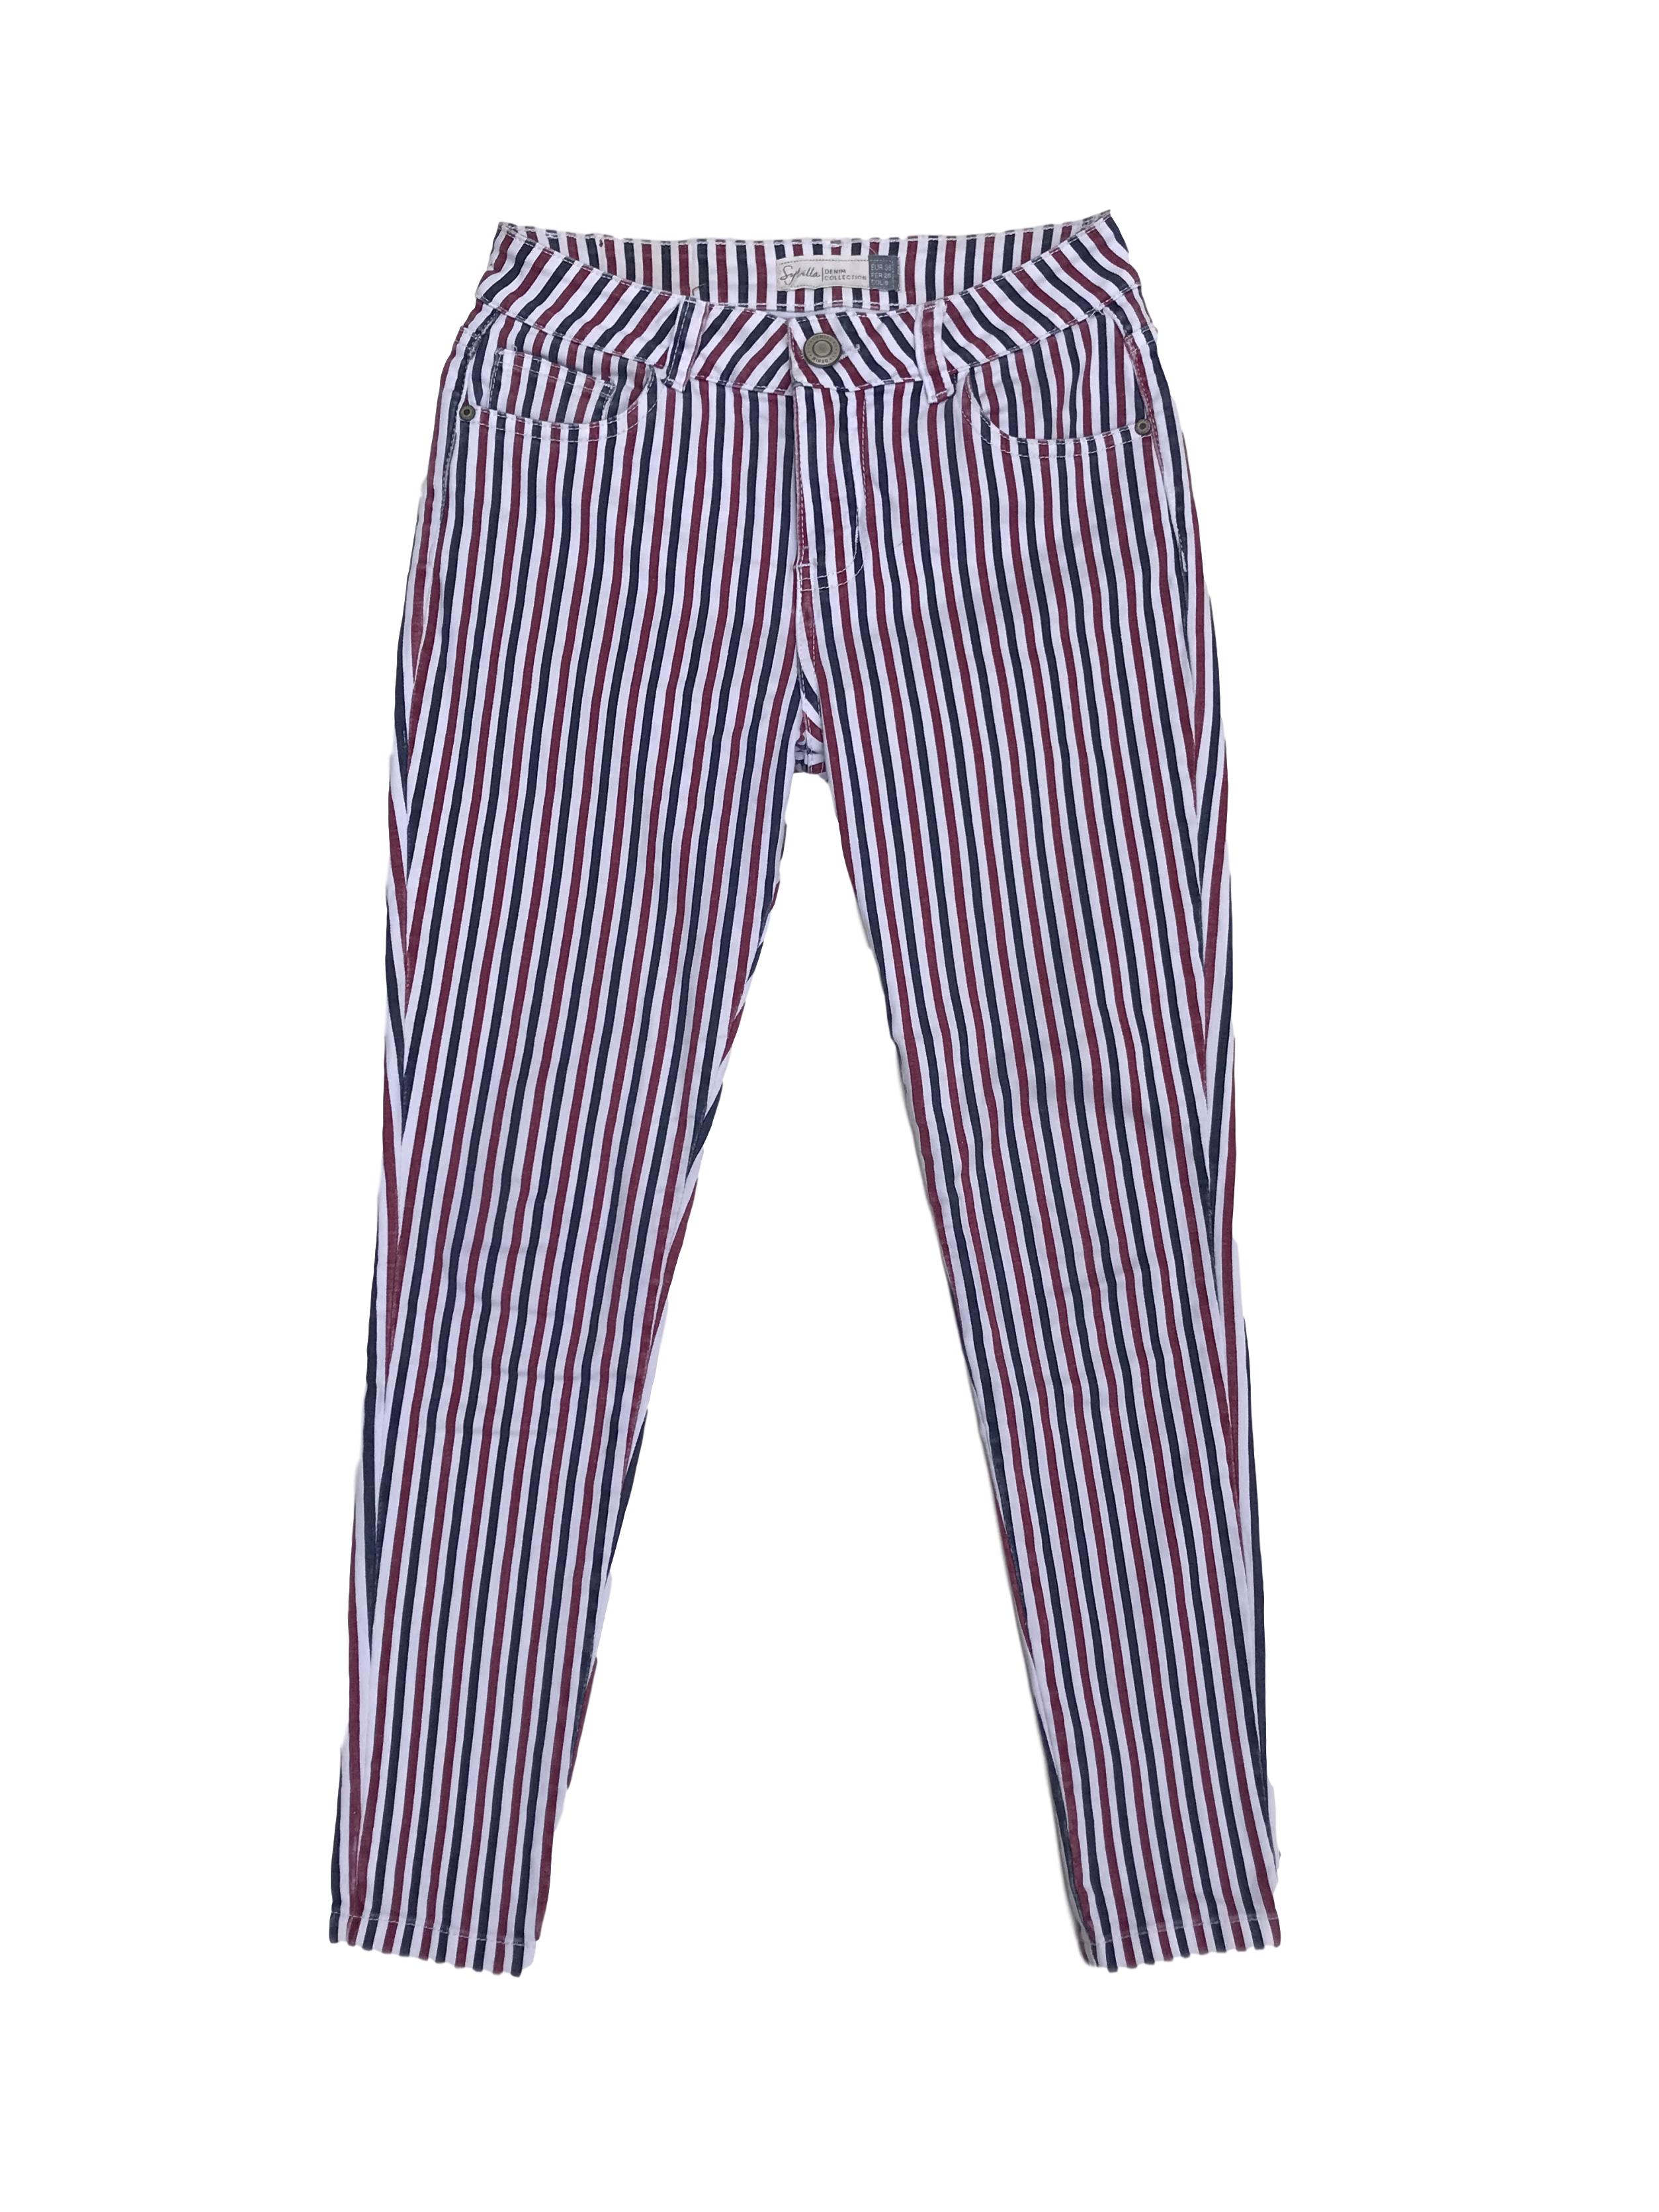 Pantalón Sybilla jean a rayas blancas, rojas y azules, 98% algodón, five pockets, pitillo